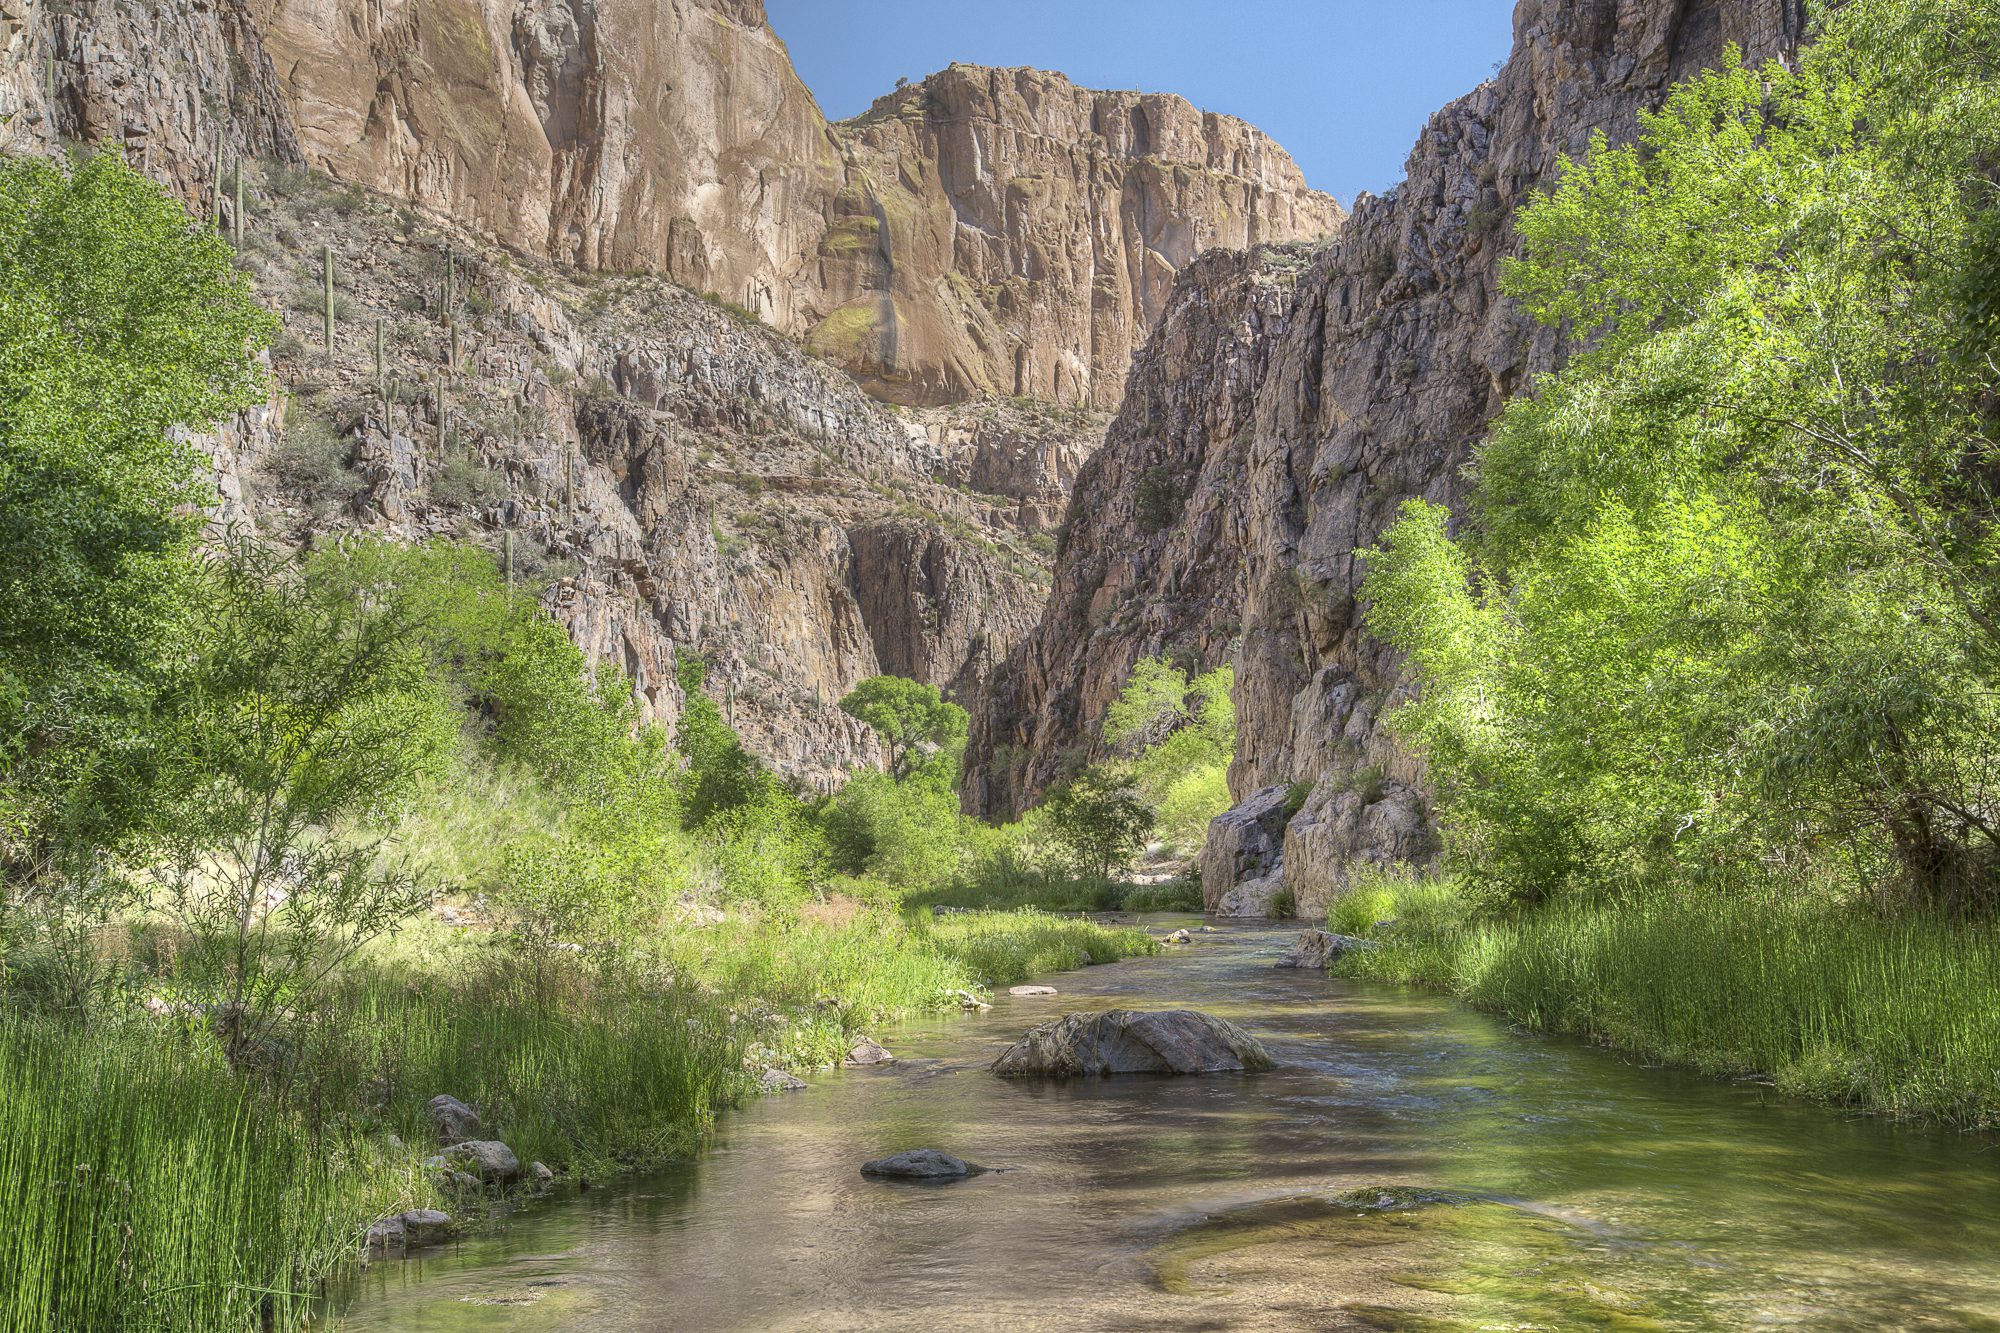 Arizona water image: Aravaipa Canyon and Creek